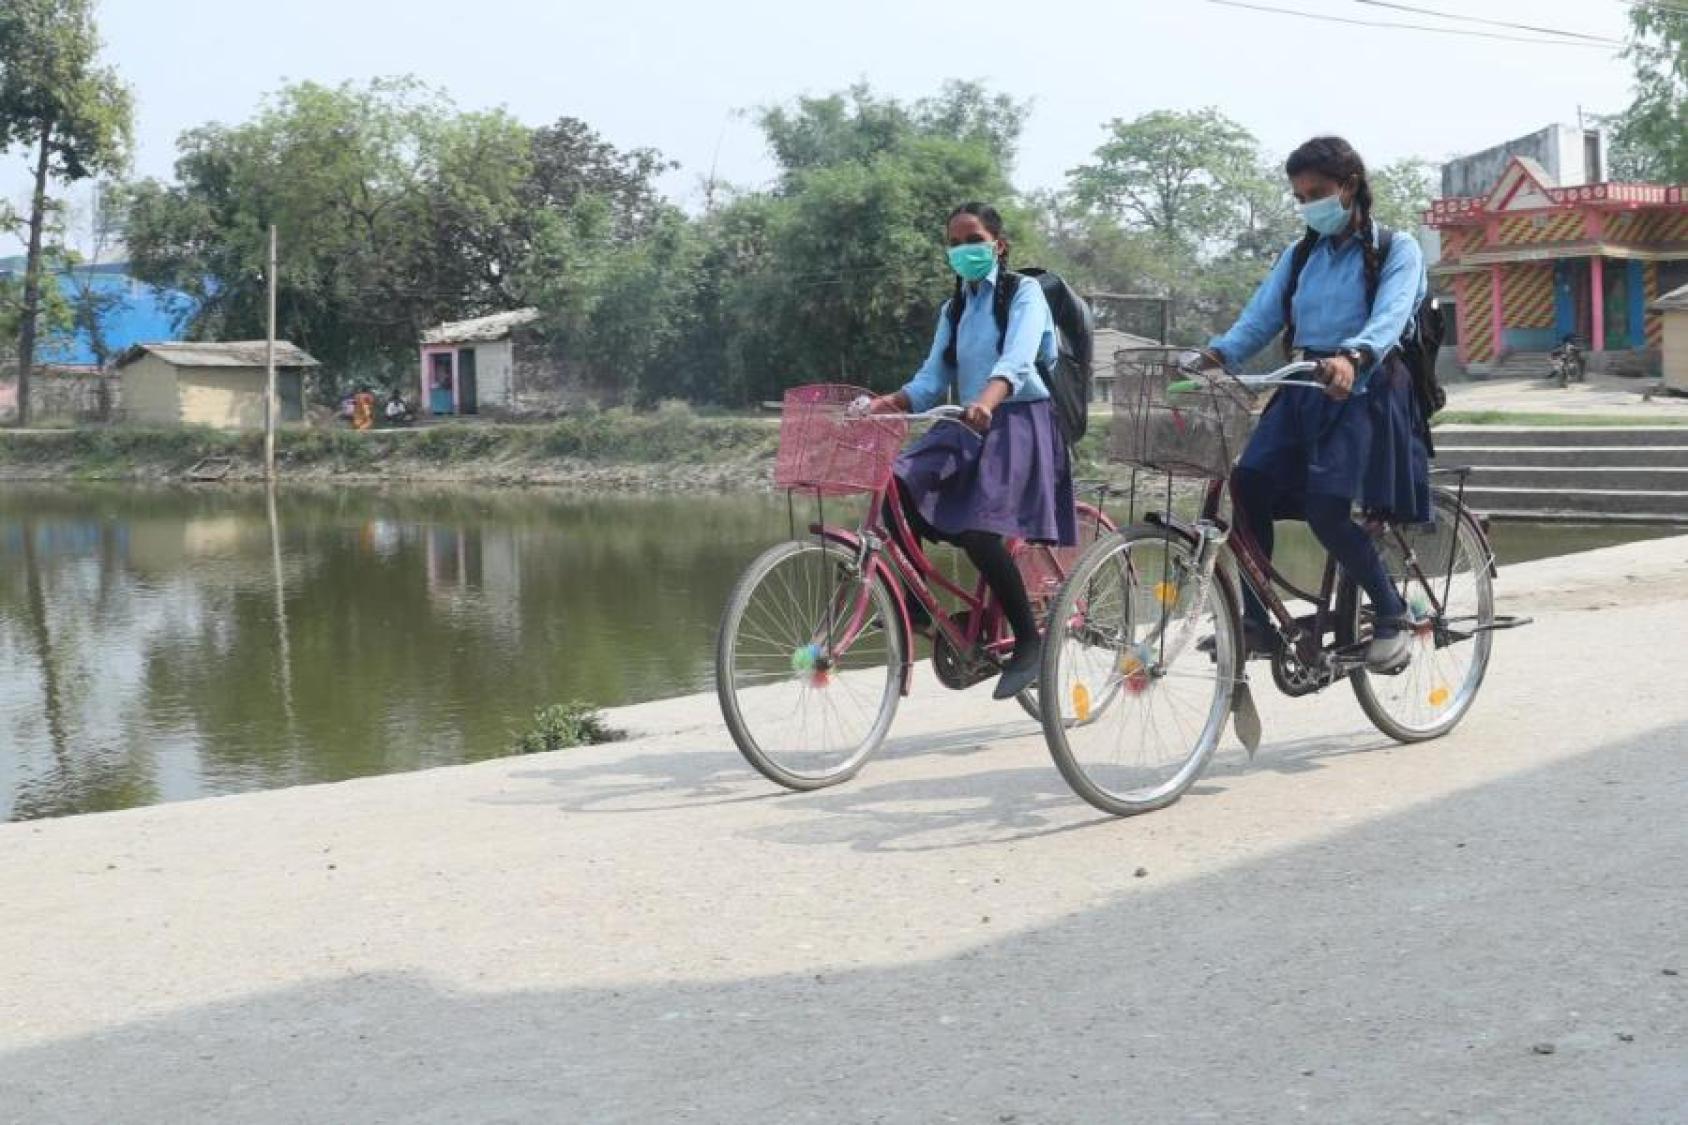 فتاتان صغيرتان ترتديان الزي المدرسي تركبان دراجات على طريق ترابي بالقرب من مسطح مائي.